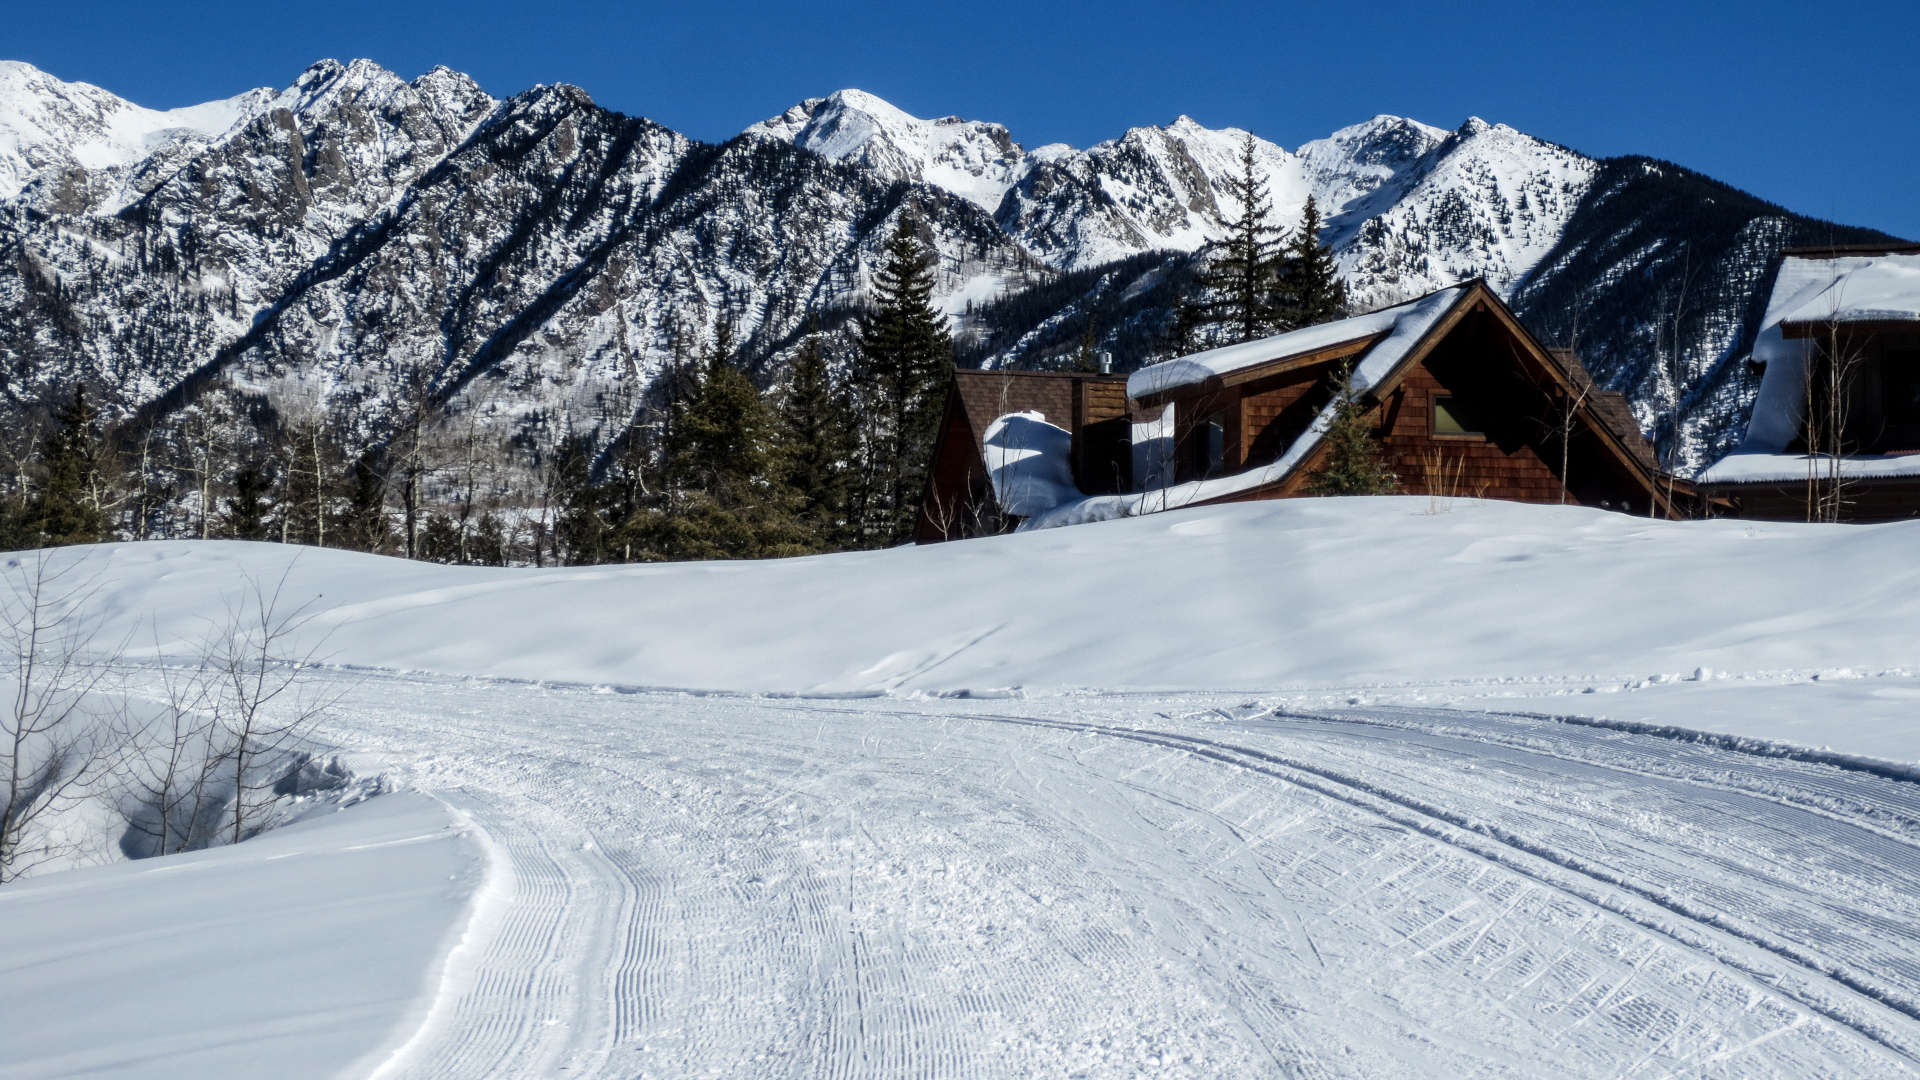 Pista de esquí X Country preparada en Colorado